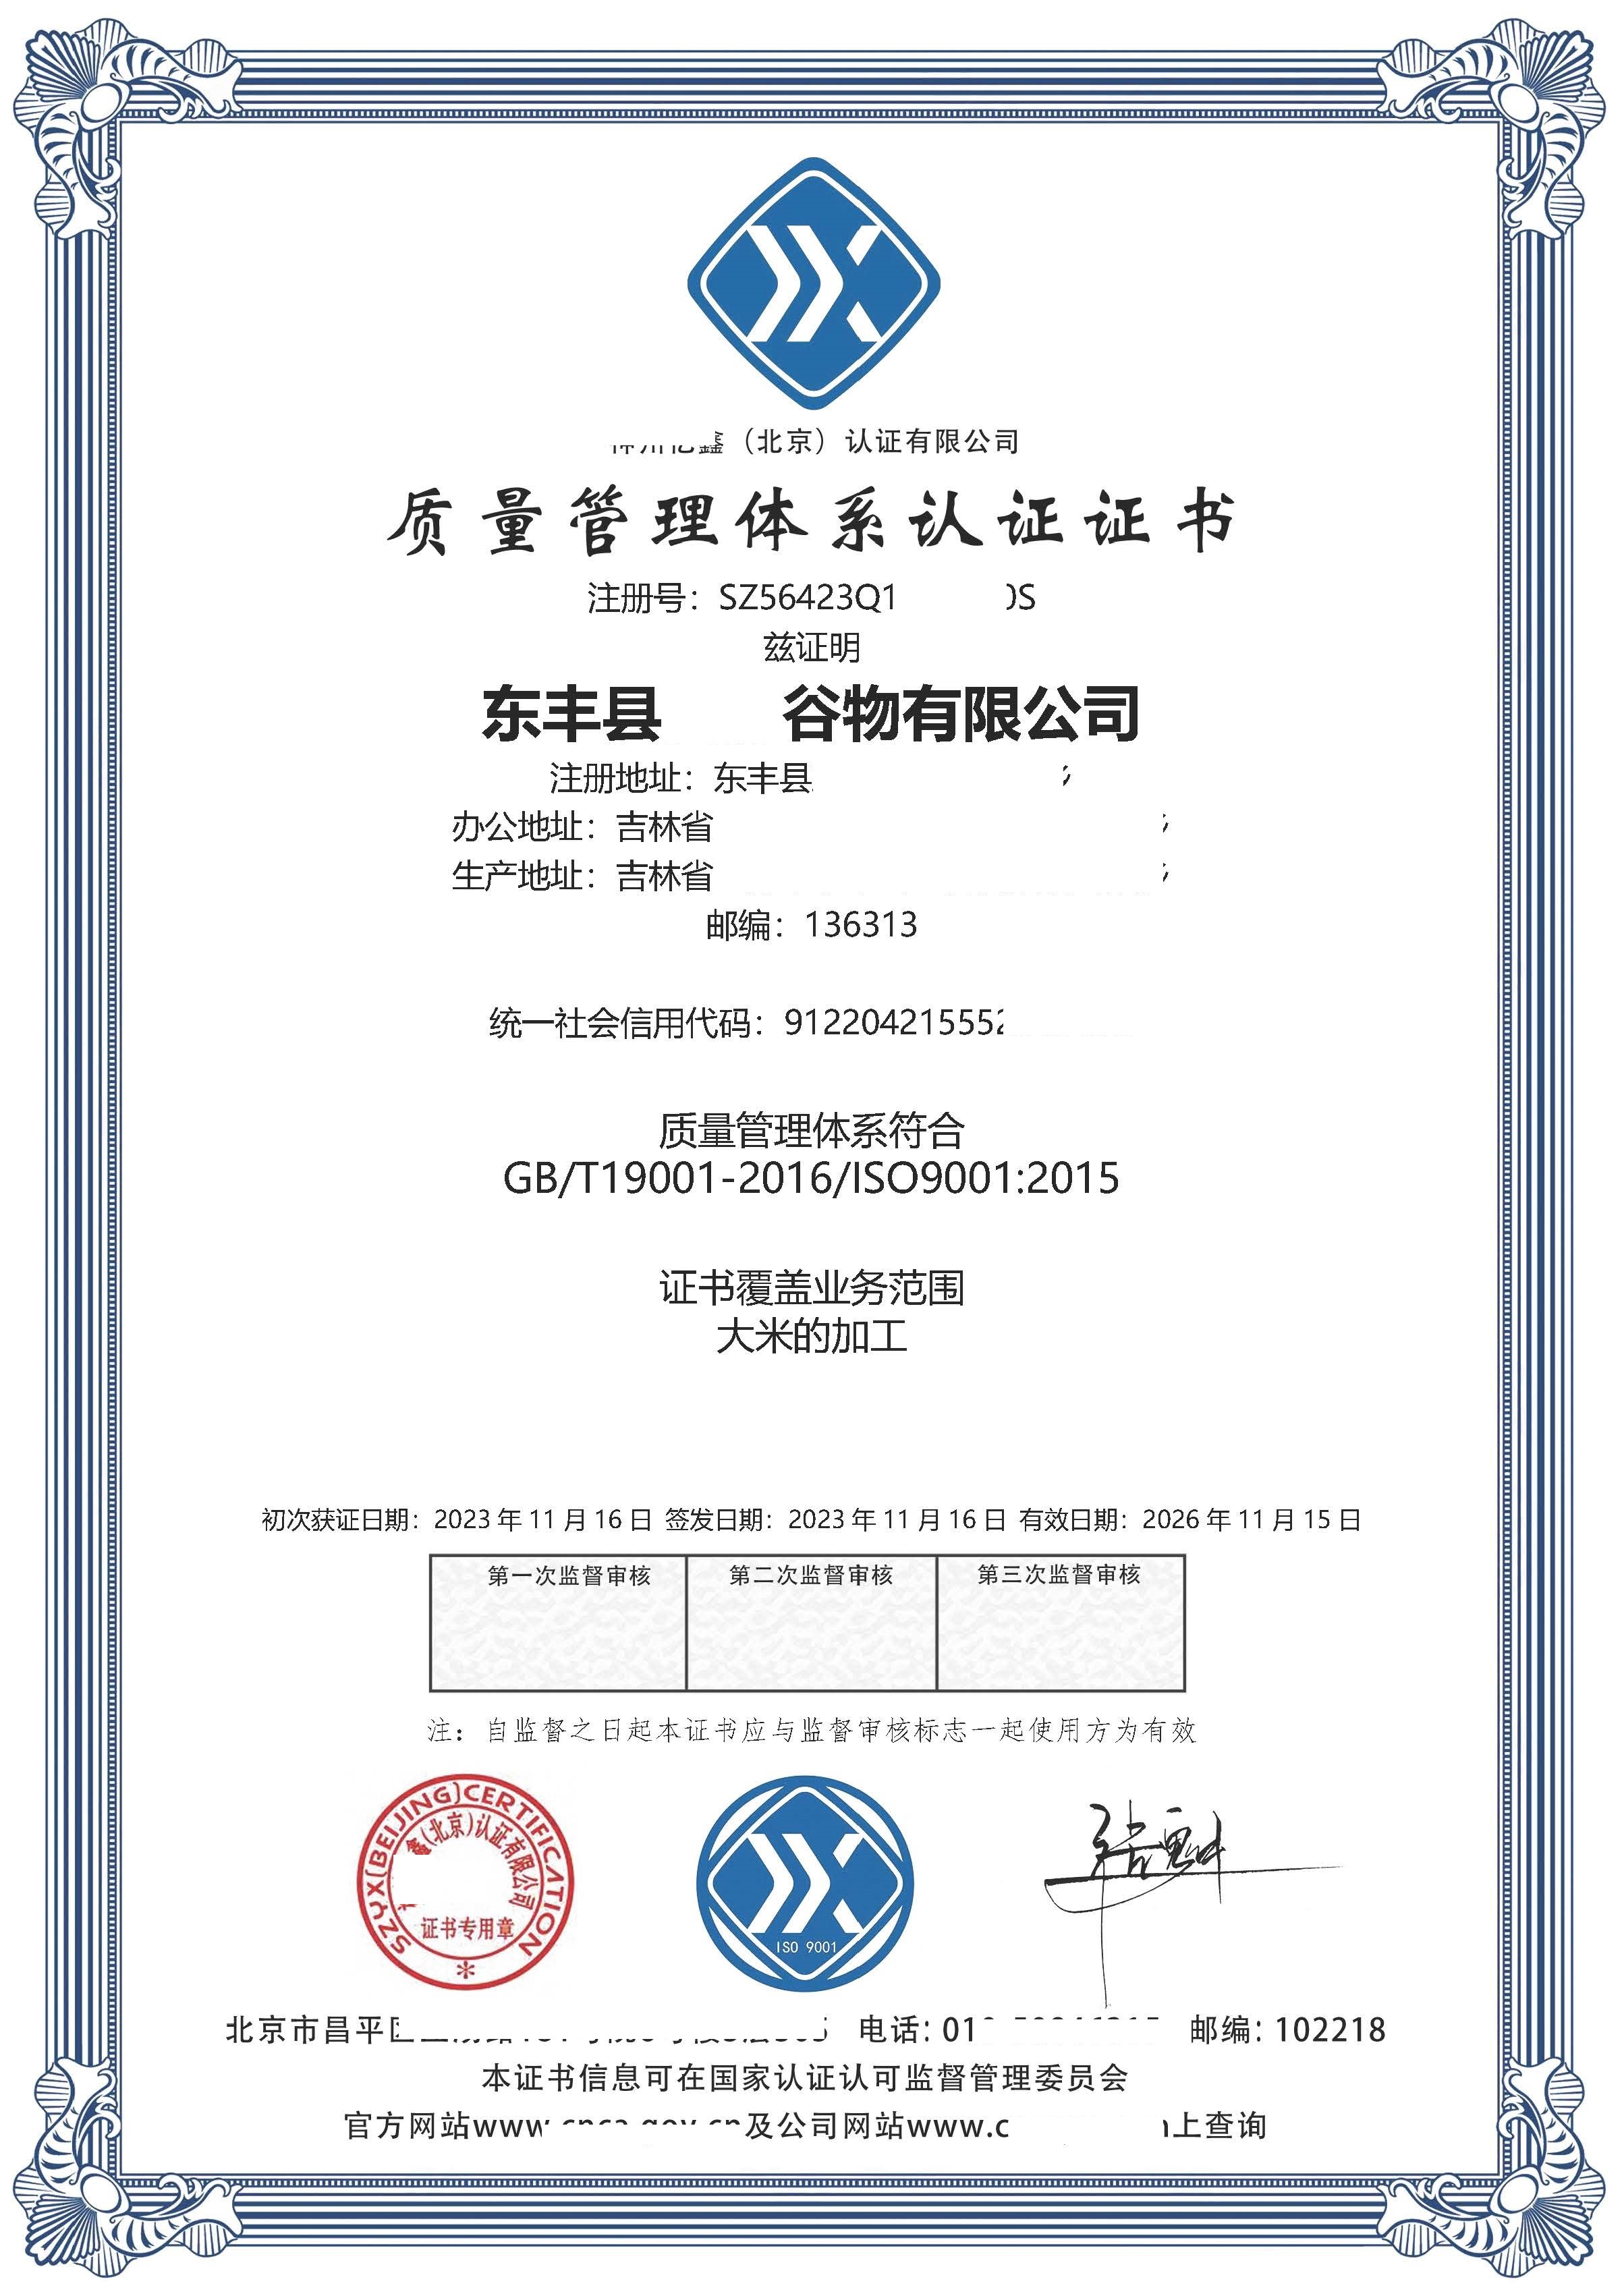 恭喜  东丰县**谷物有限公司  获得质量管理体系认证证书